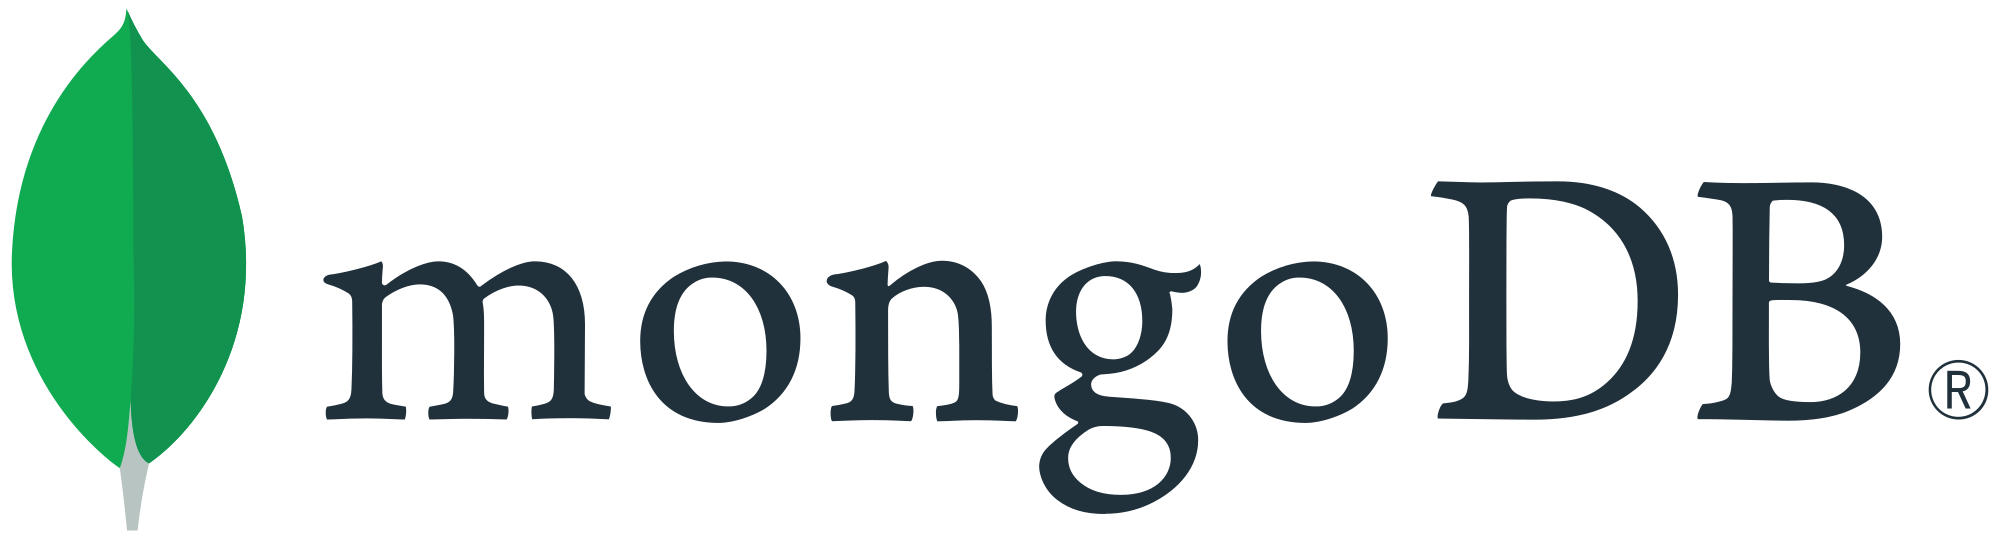 Monogo-Db Logo